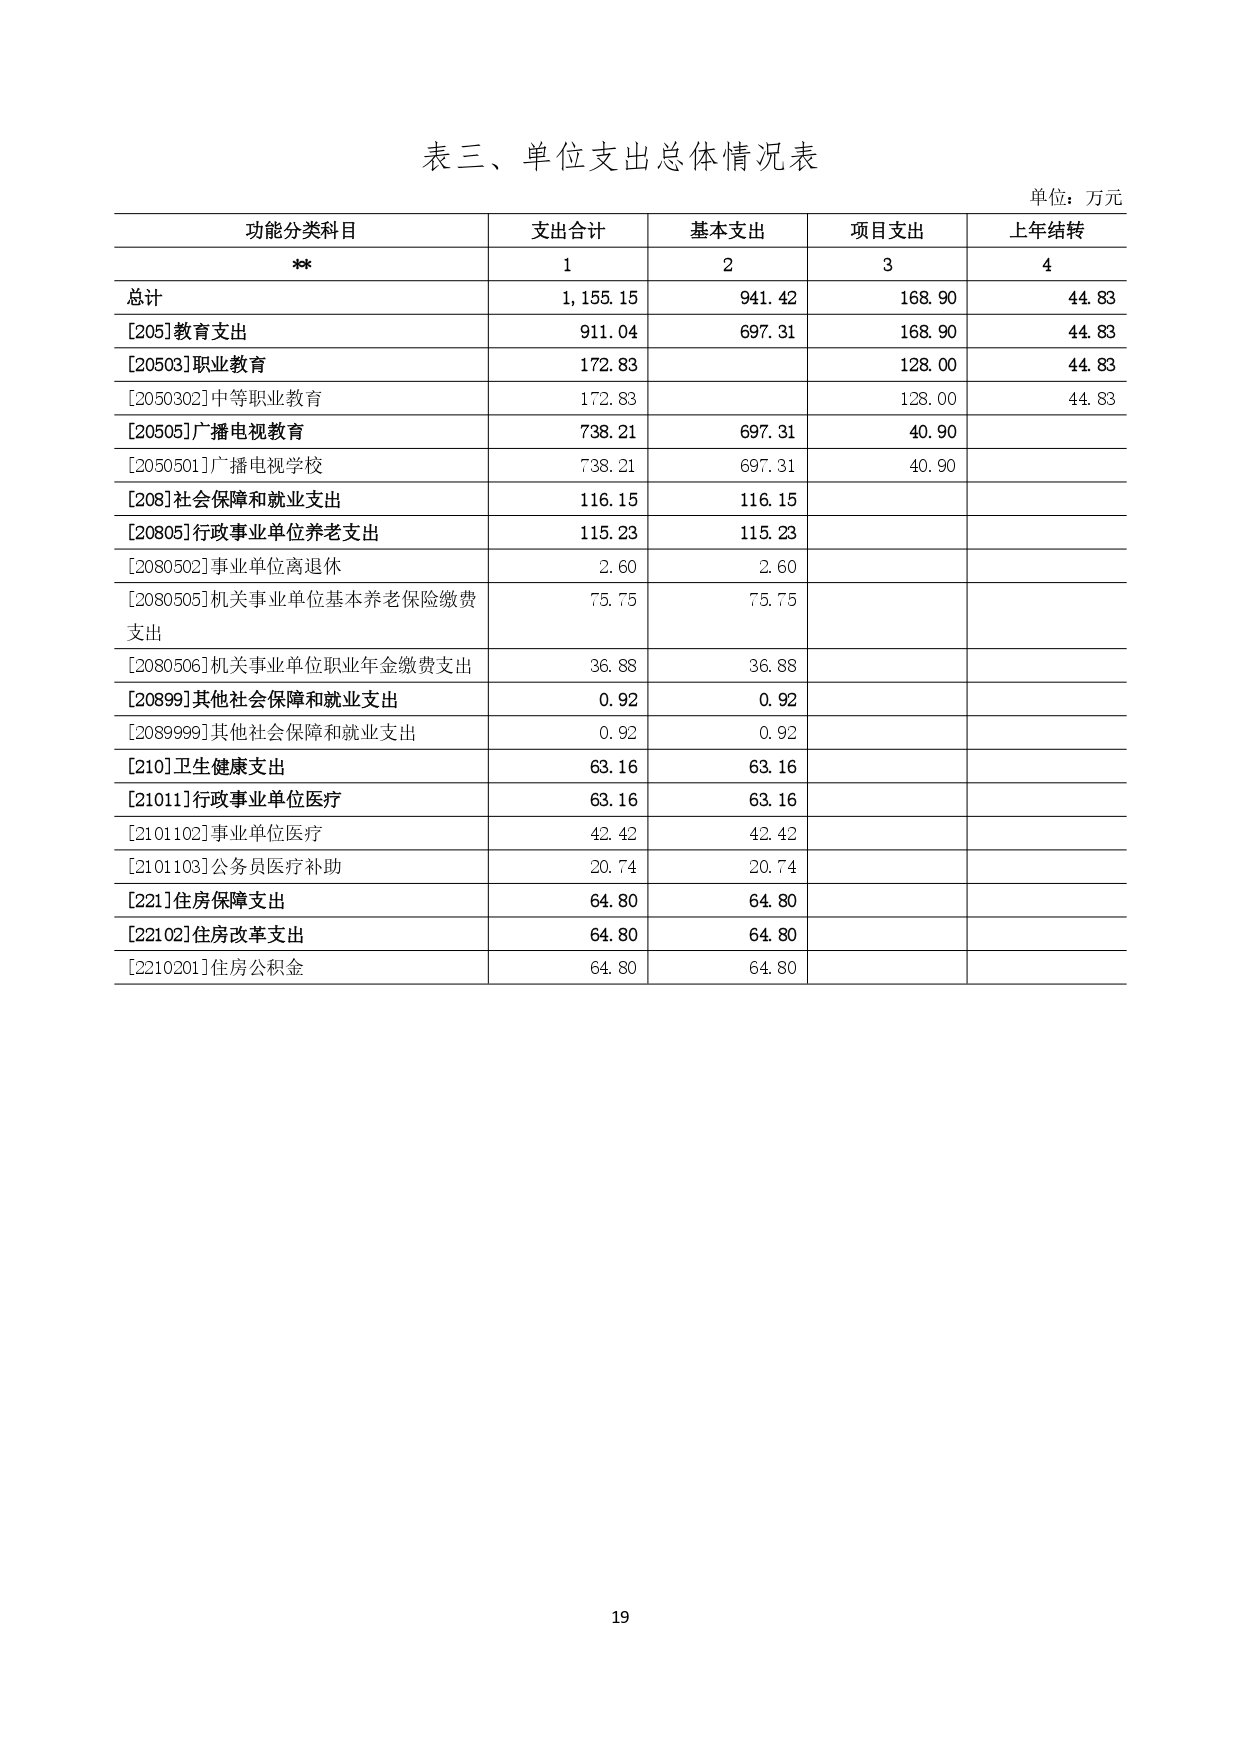 甘肃省广播电视学校2023年单位预算公开报告_page-0020.jpg